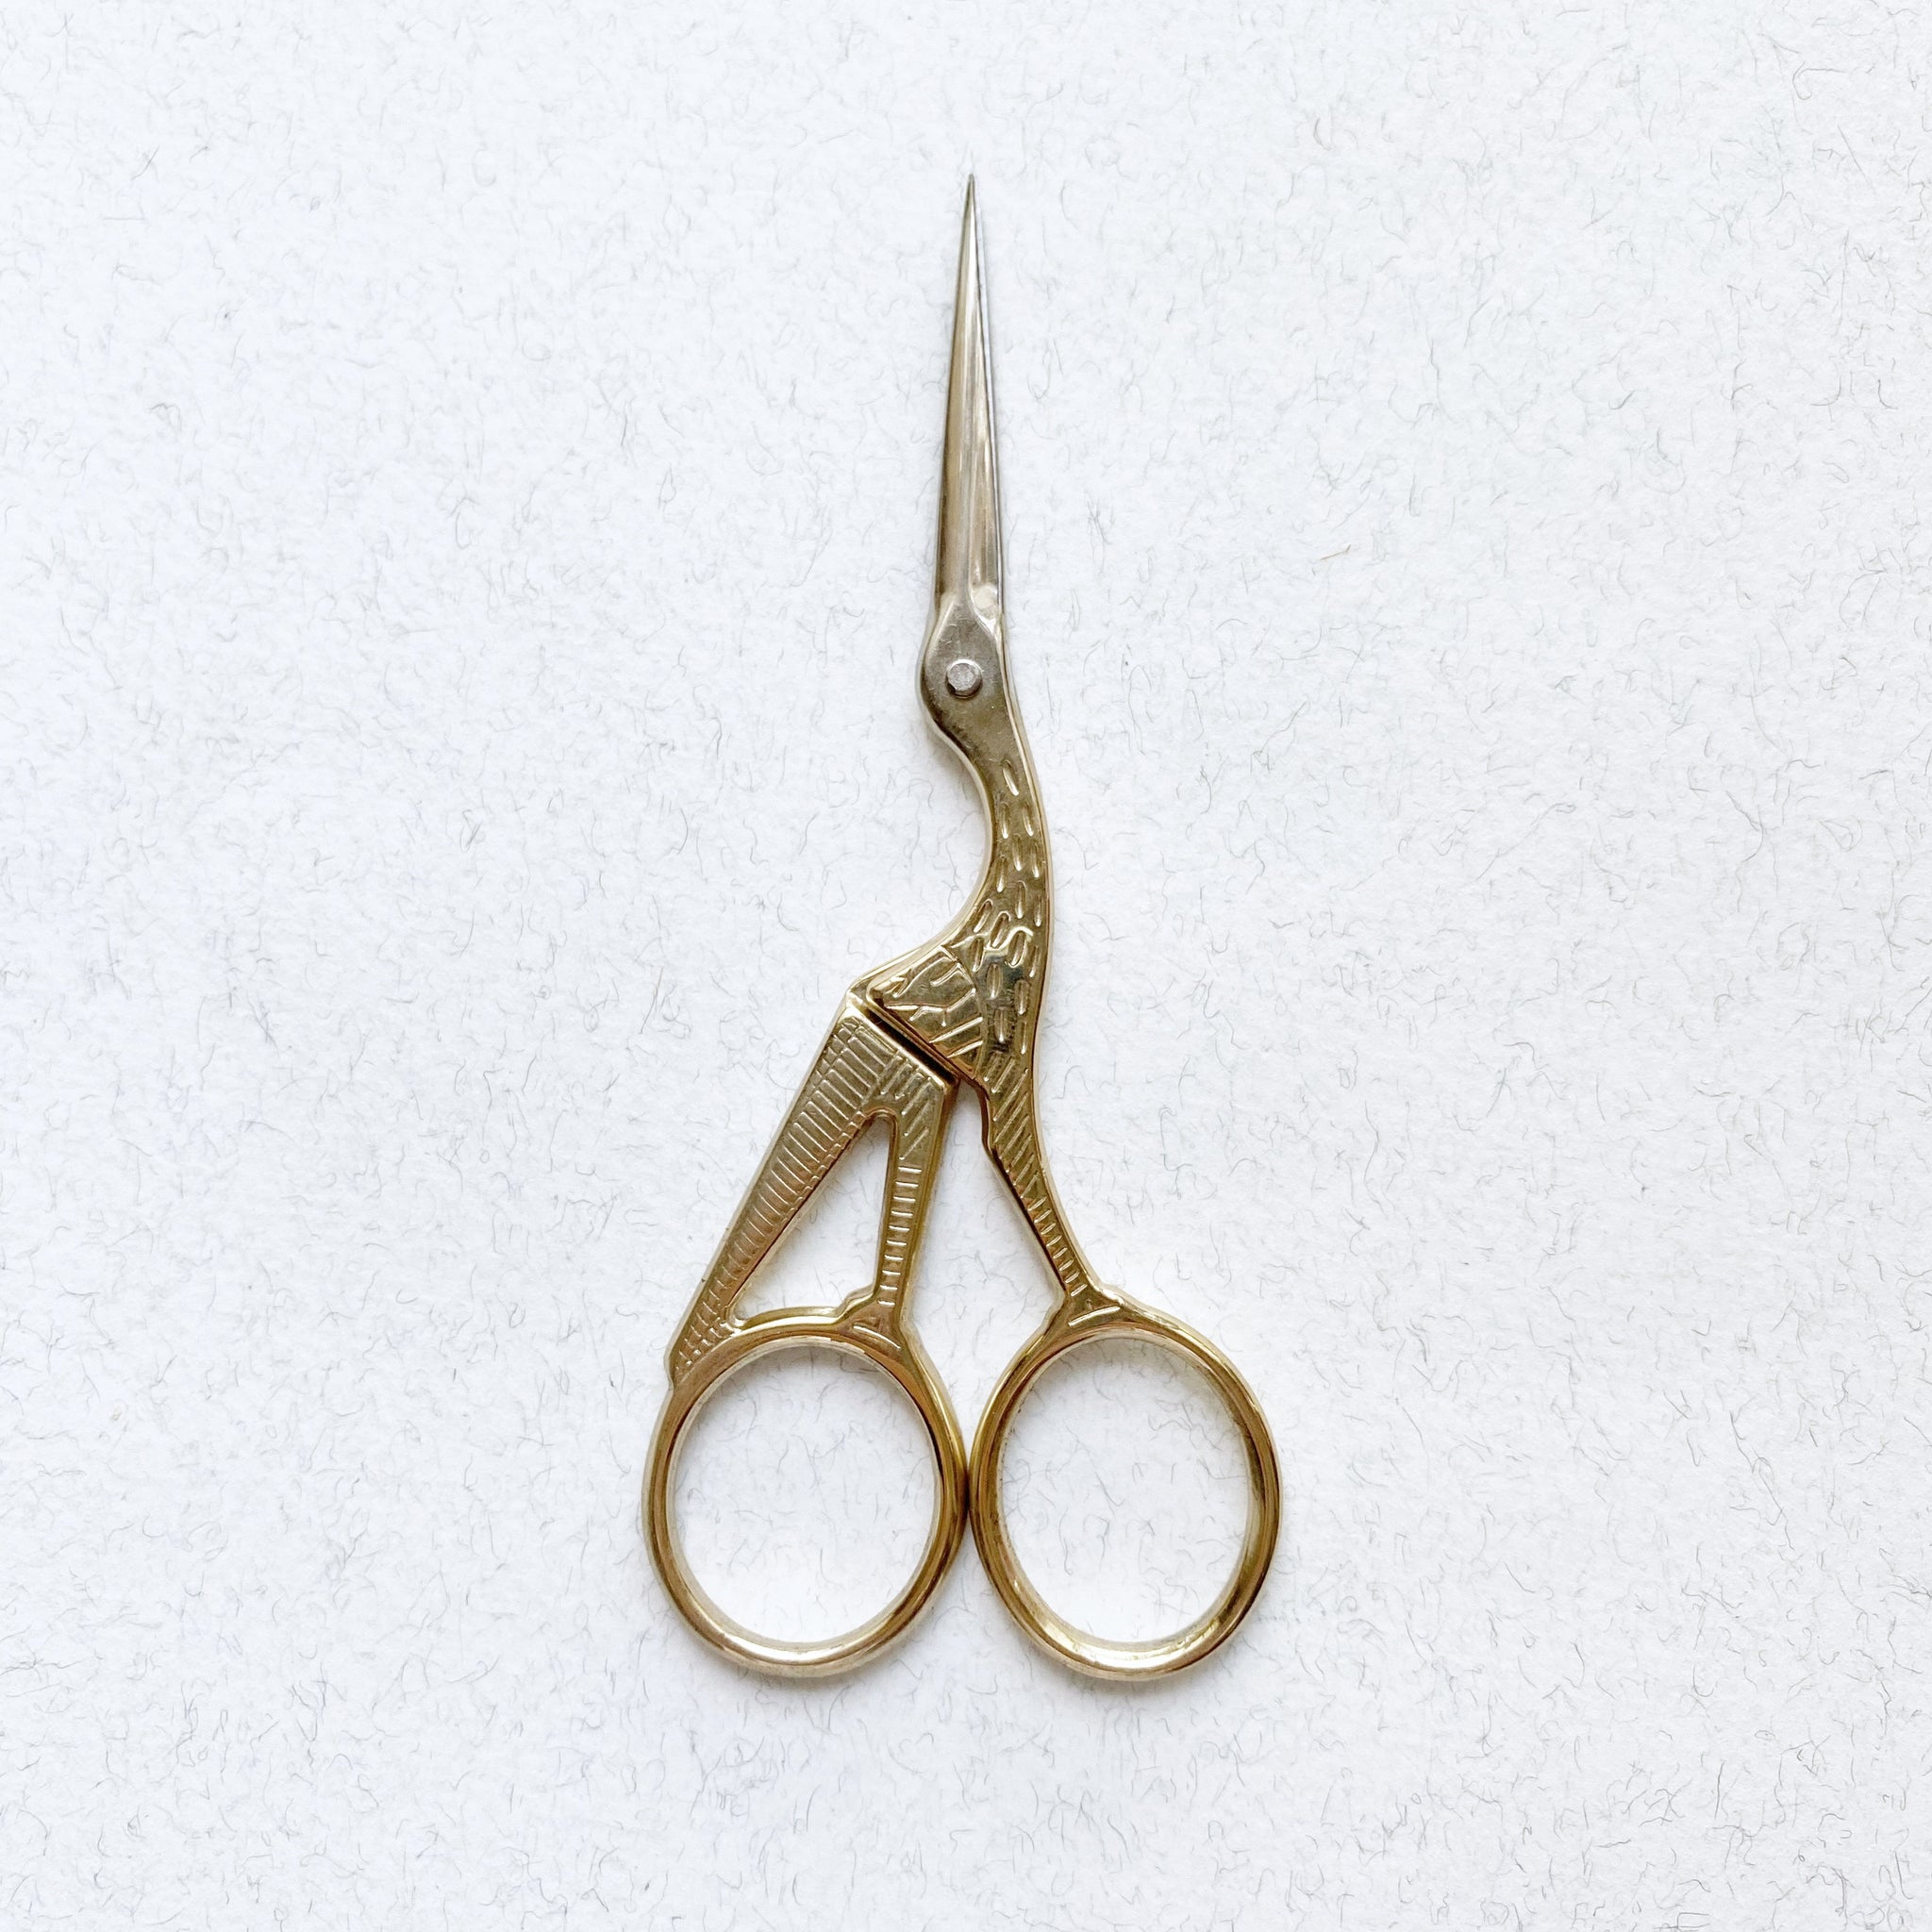 Antique-Style Scissor 6